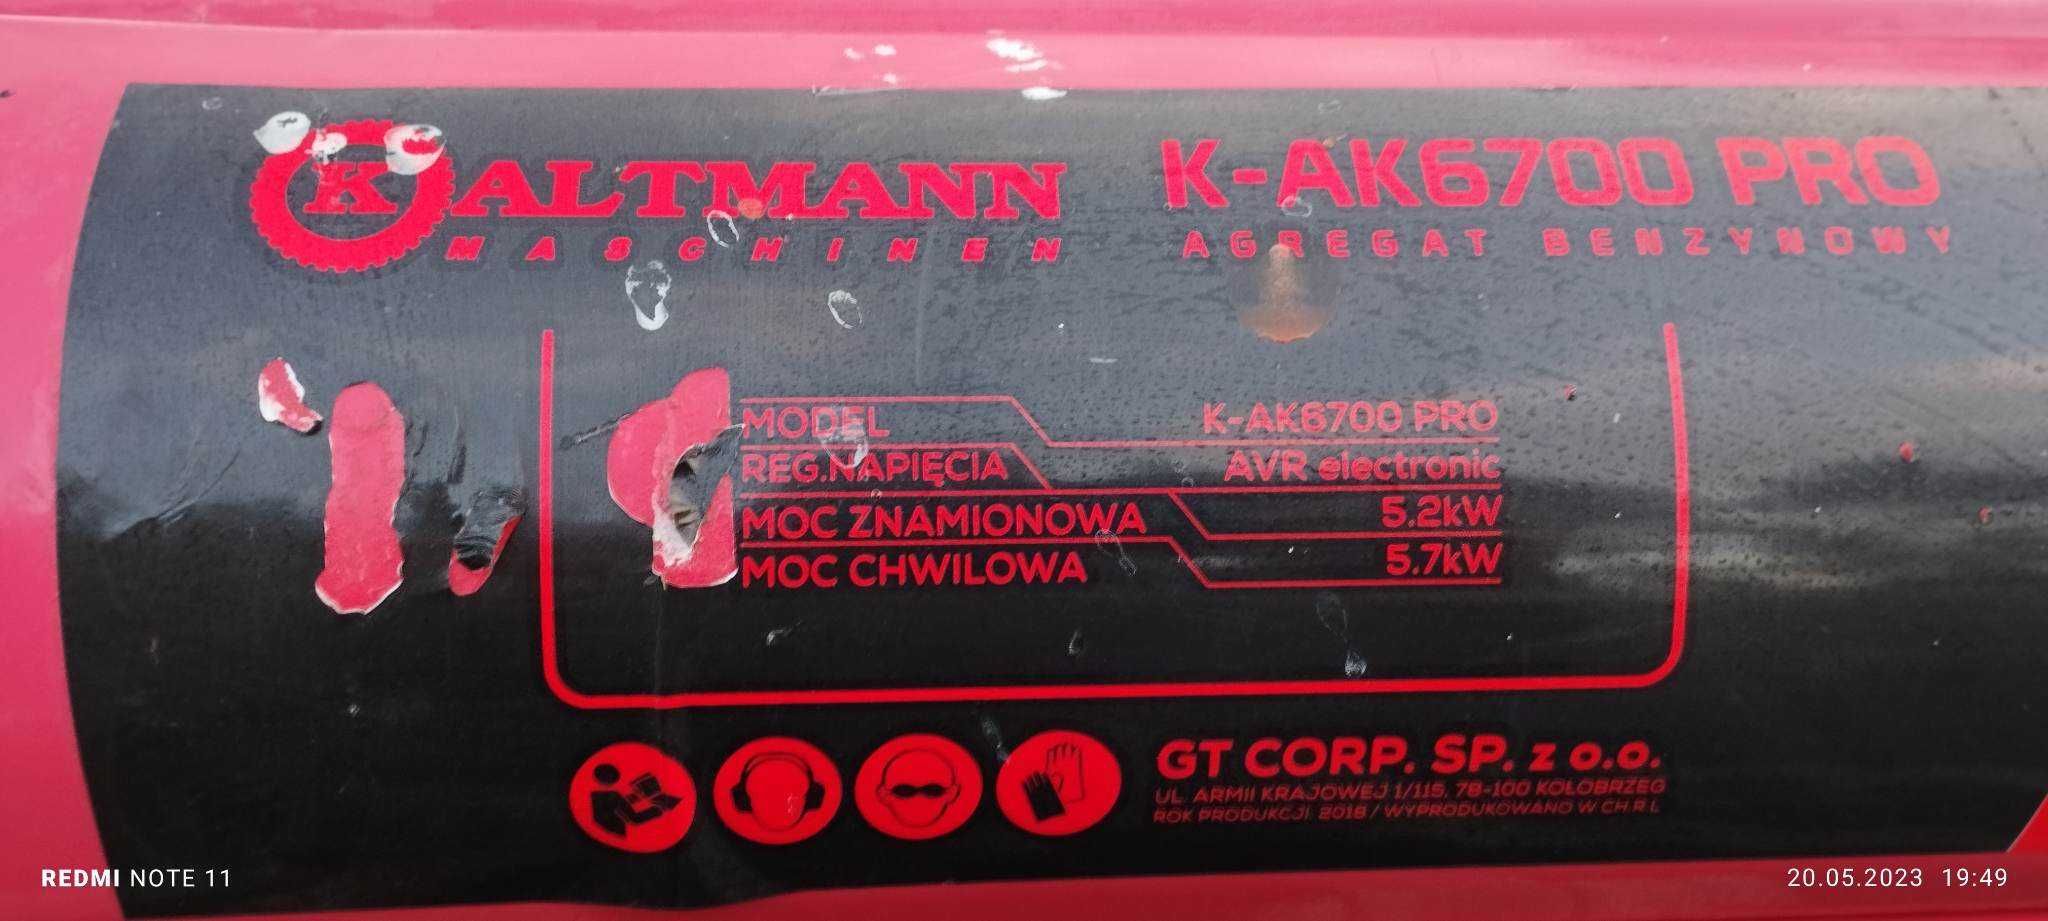 Agregar prądotwórczy KALTMAN K-AK6700 PRO